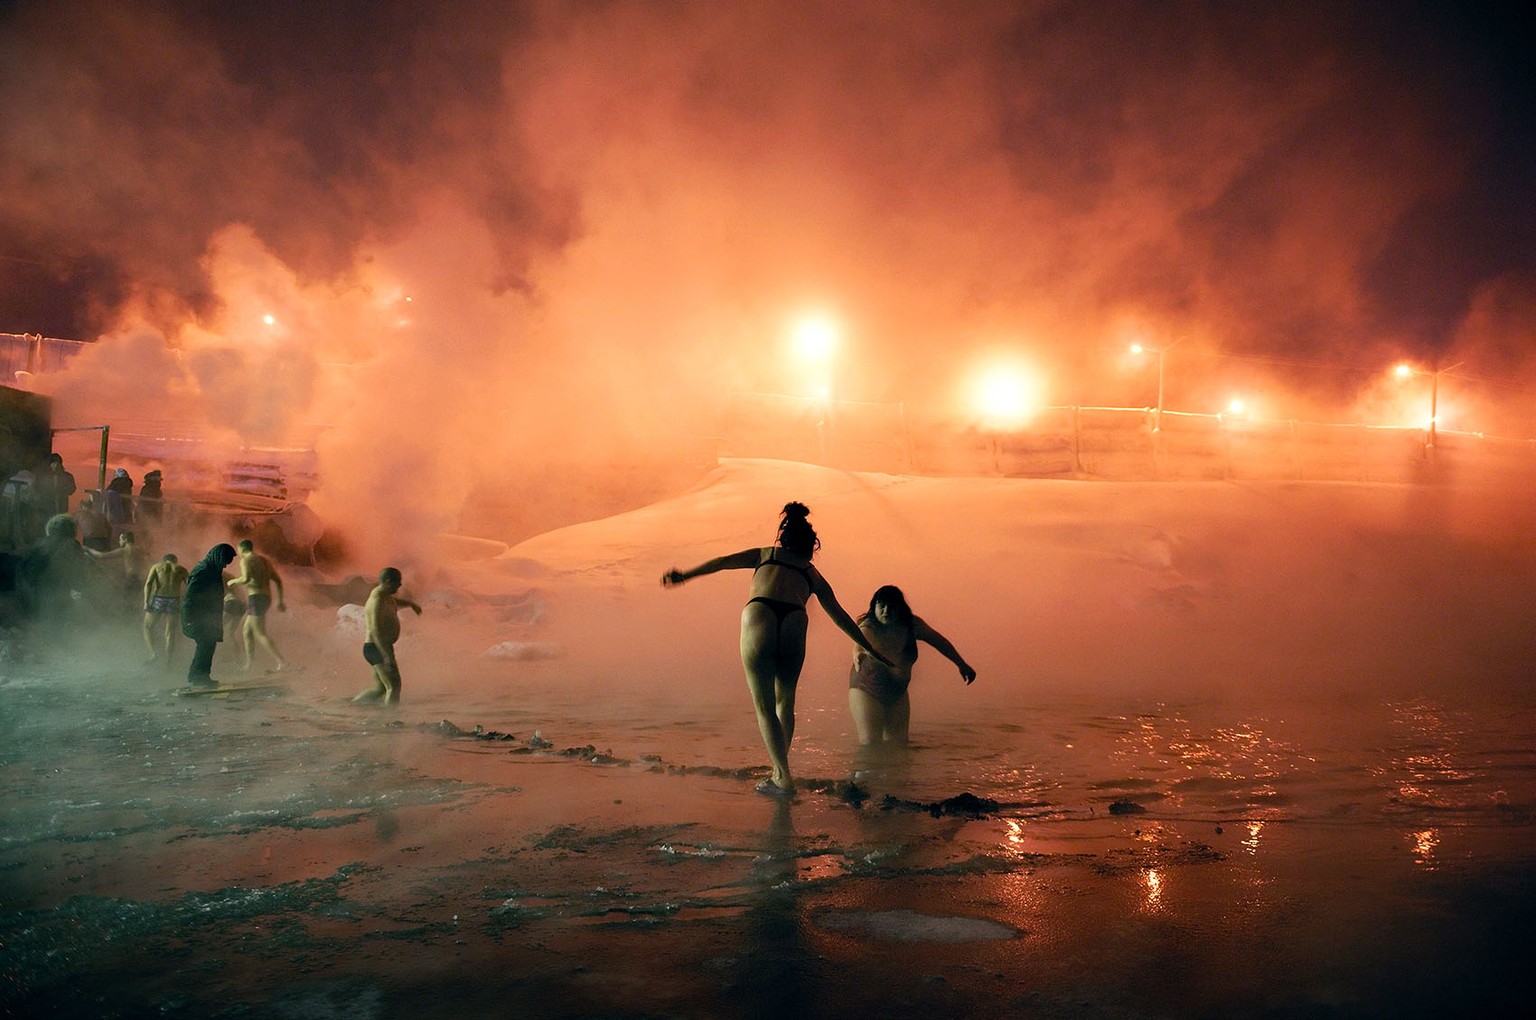 L’épiphanie orthodoxe, fin janvier, se célèbre traditionnellement par un bain des fidèles dans le lac de Norilsk. Cette cérémonie religieuse regroupe de nombreux habitants bravant le froid pour se bai ...